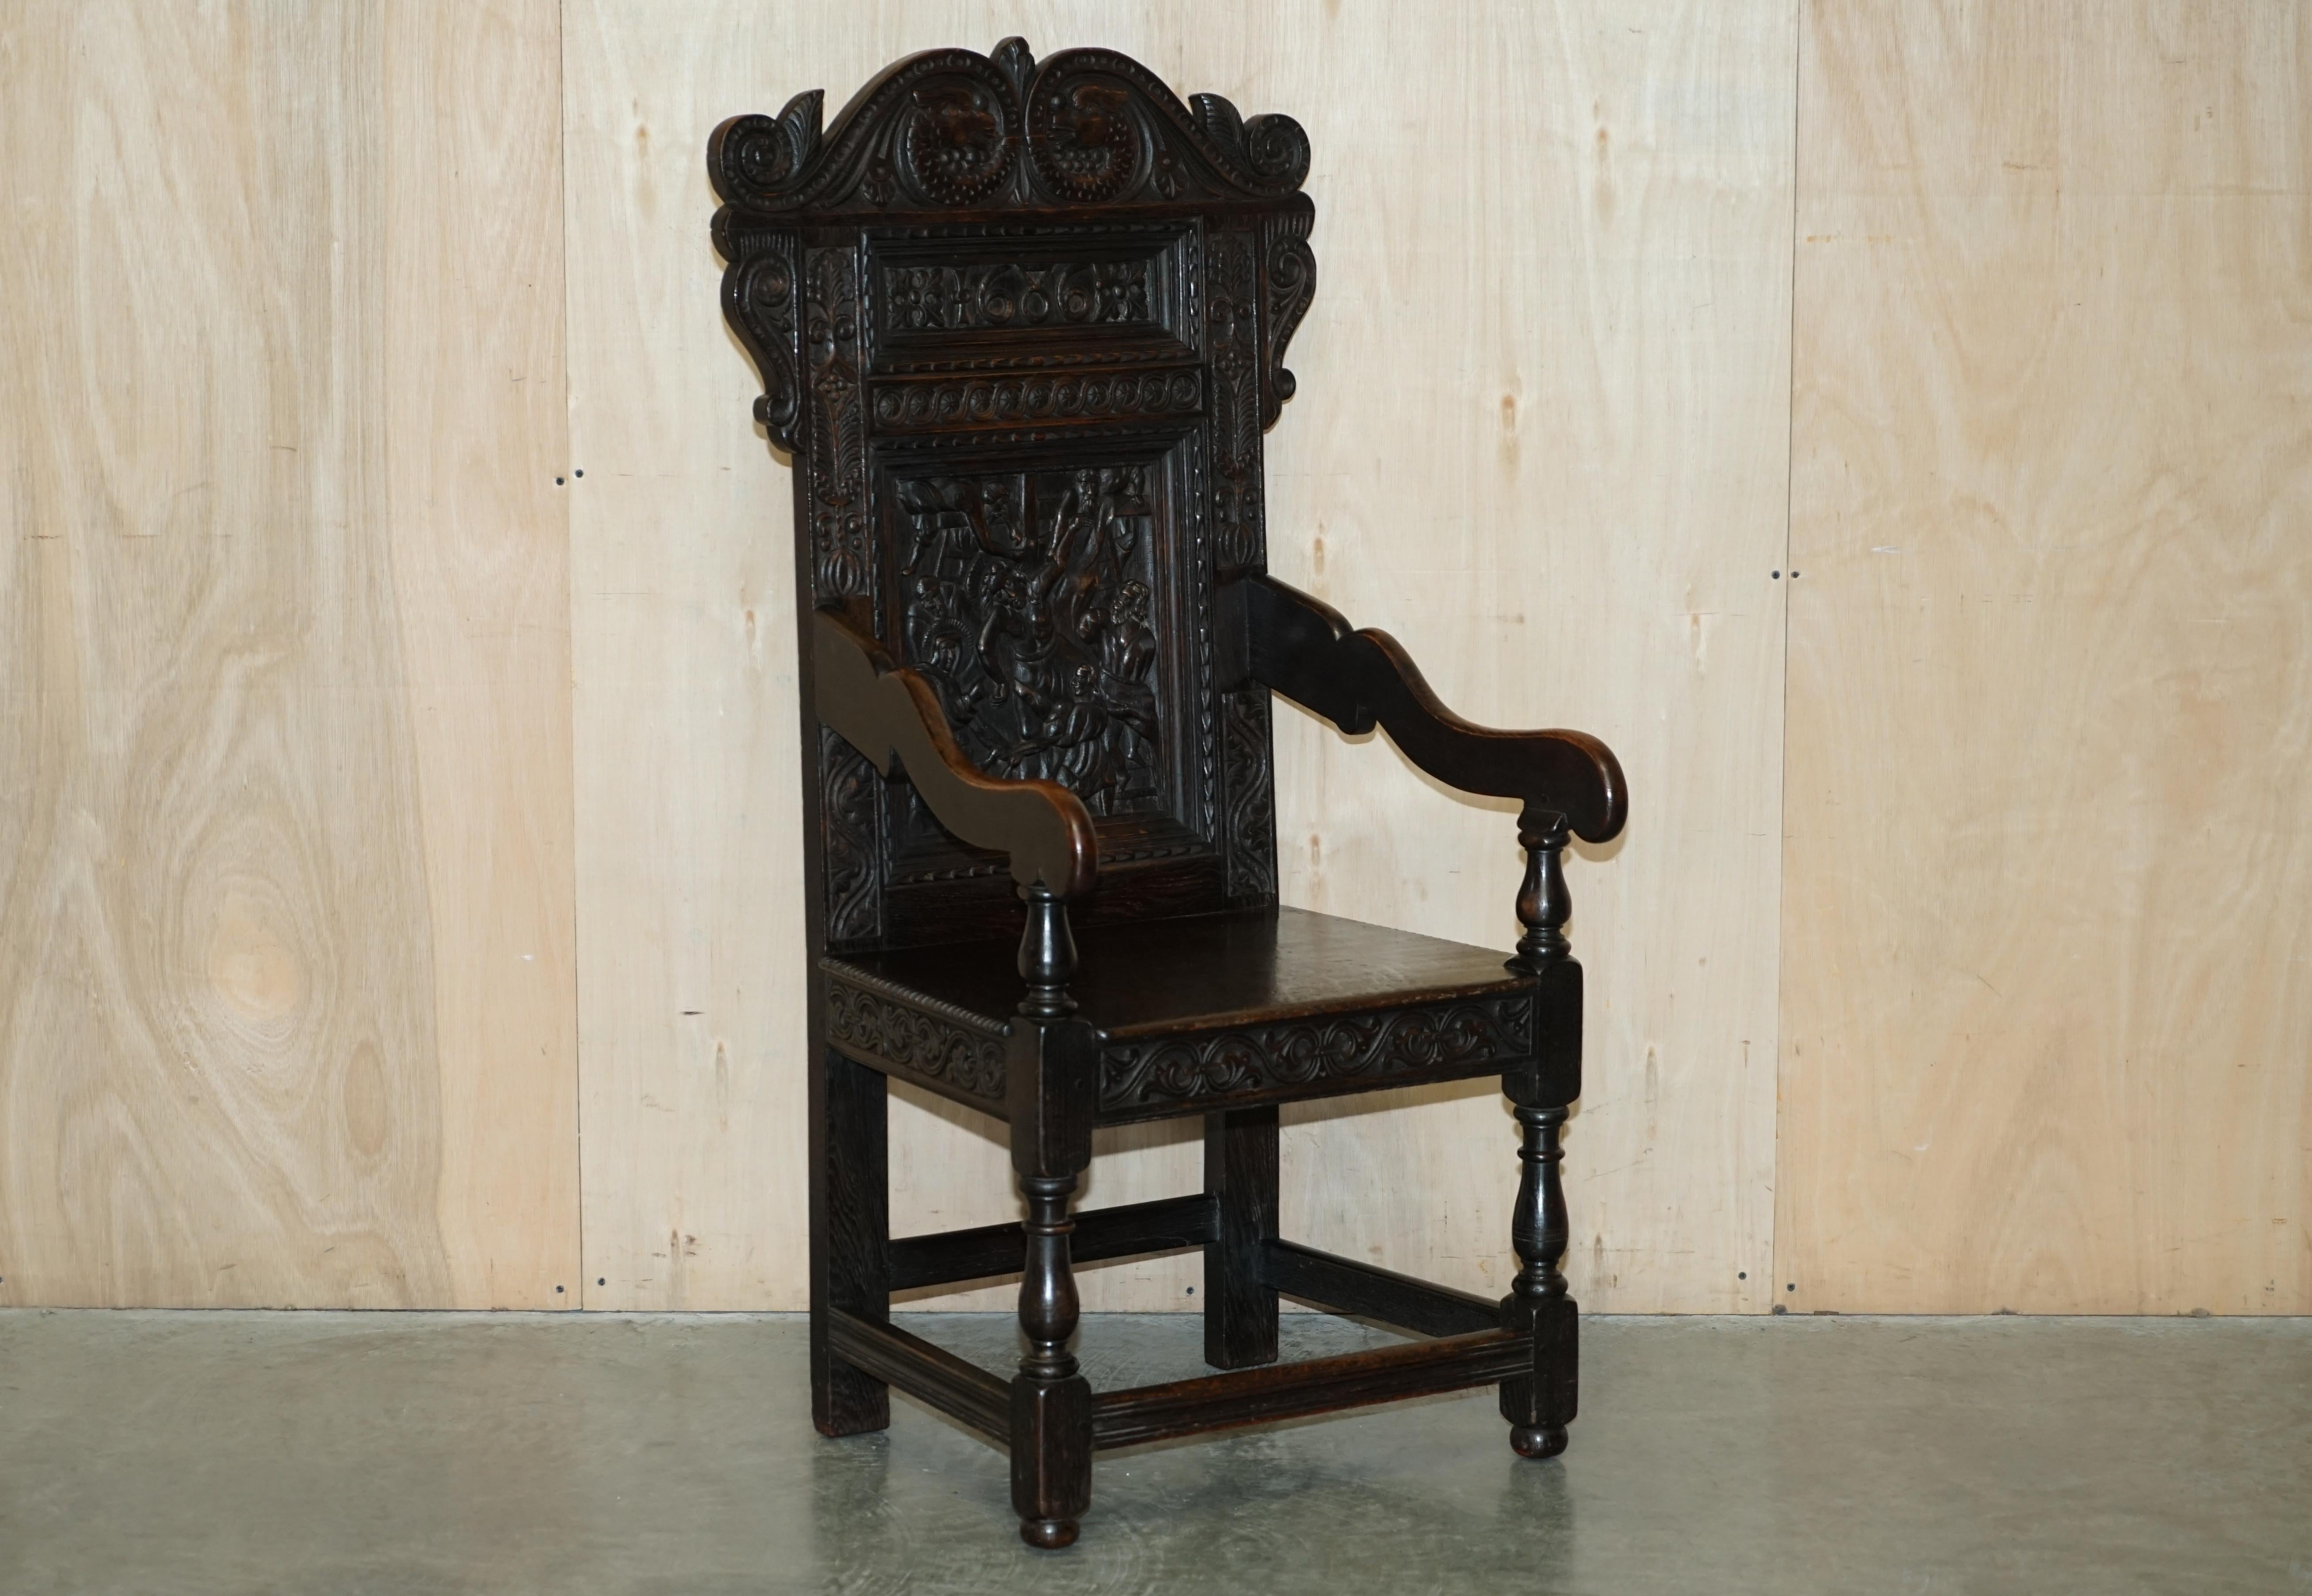 Wir freuen uns, diesen außergewöhnlich seltenen, 1686 datierten, nordenglischen, handgeschnitzten Wainscot-Sessel aus massiver Eiche zum Verkauf anbieten zu können.

Eine sehr dekorative und originelle Stück der Rückseite zeigt eine Art von Szene,